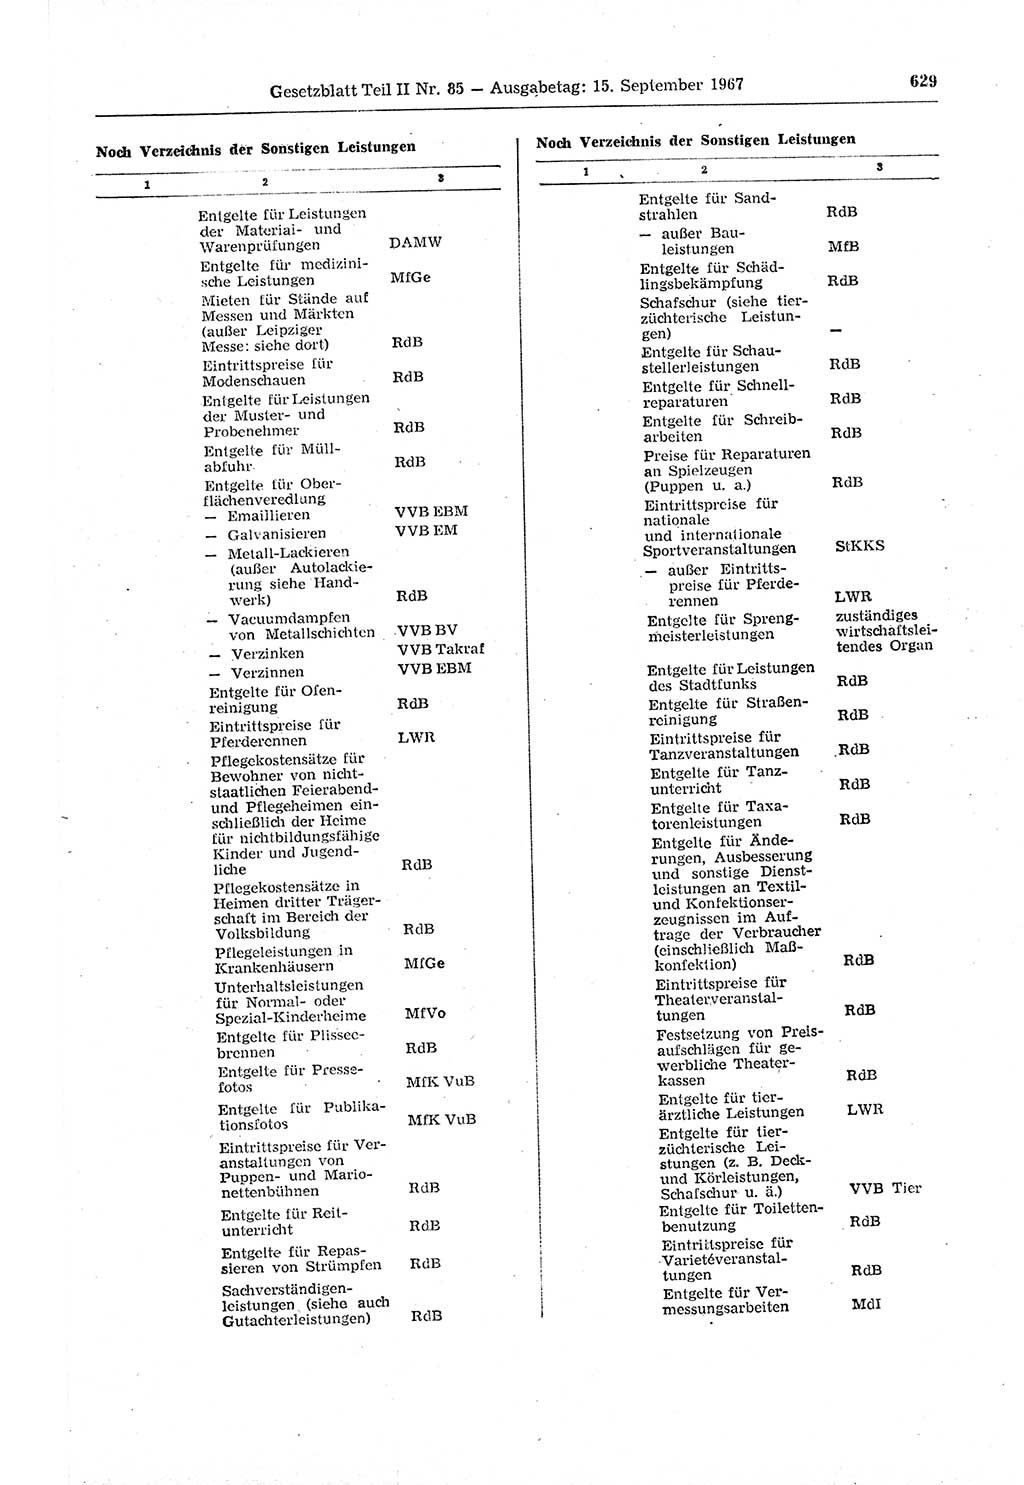 Gesetzblatt (GBl.) der Deutschen Demokratischen Republik (DDR) Teil ⅠⅠ 1967, Seite 629 (GBl. DDR ⅠⅠ 1967, S. 629)